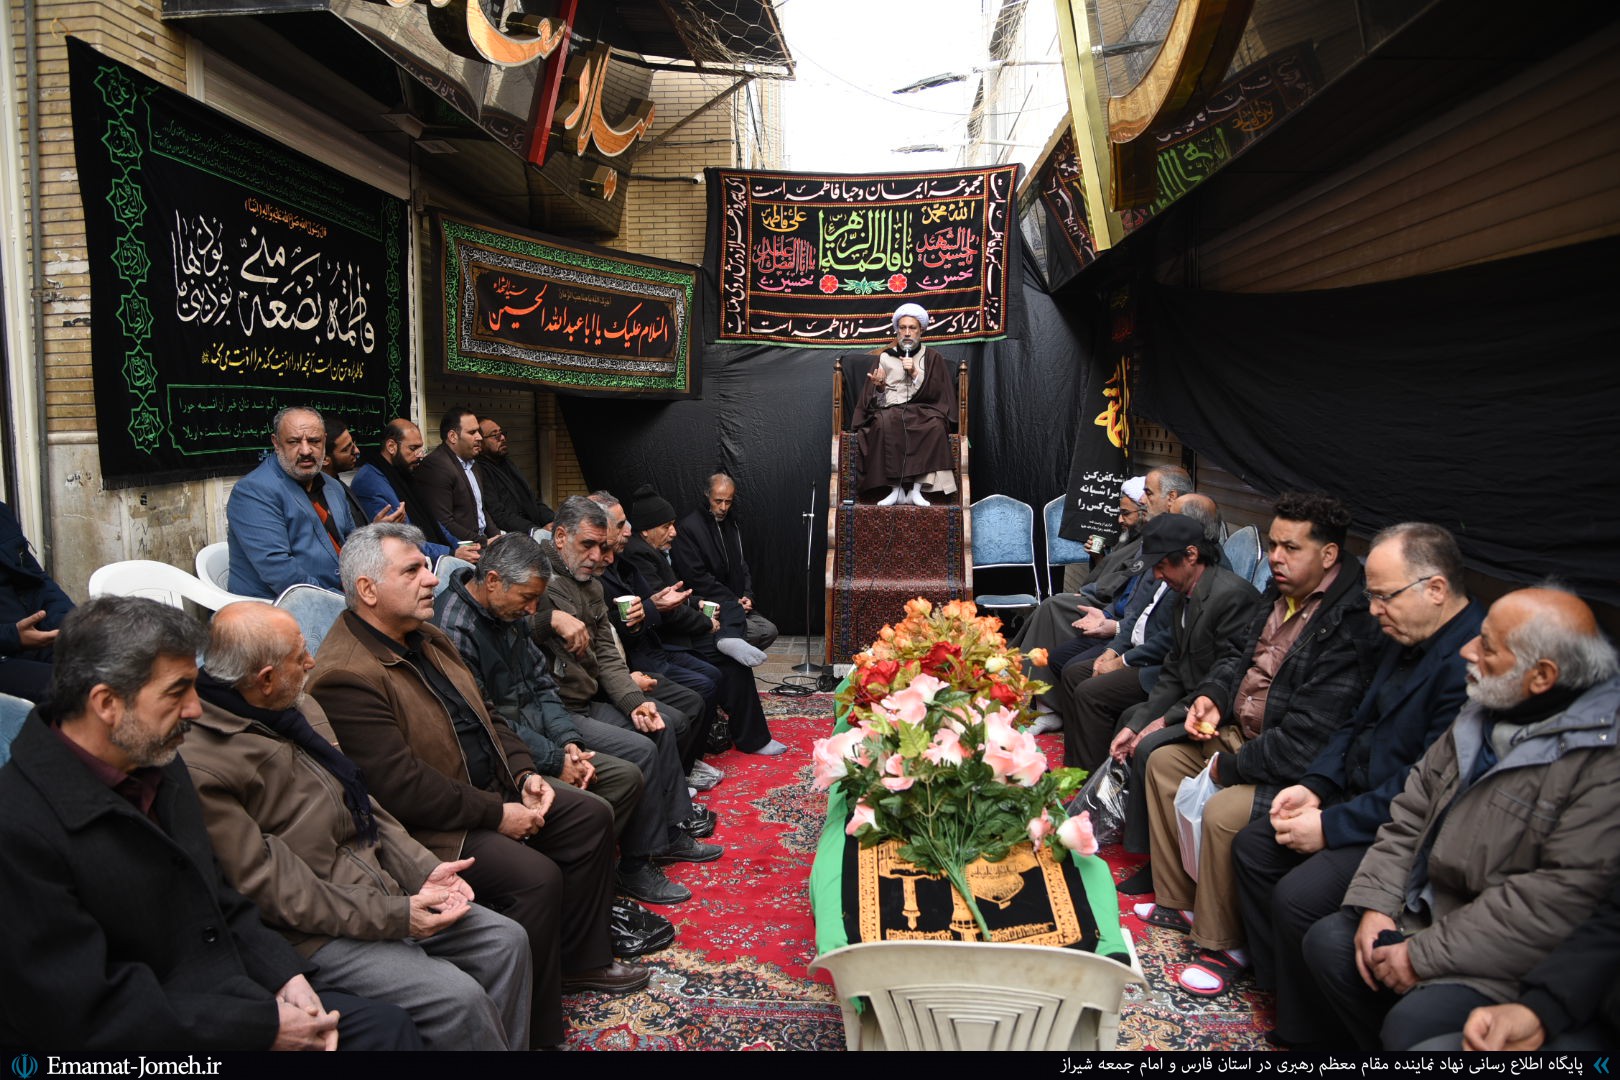 سخنرانی آیت الله دژکام به مناسبت شهادت حضرت زهرا(س) در بازار زرگرهای شیراز